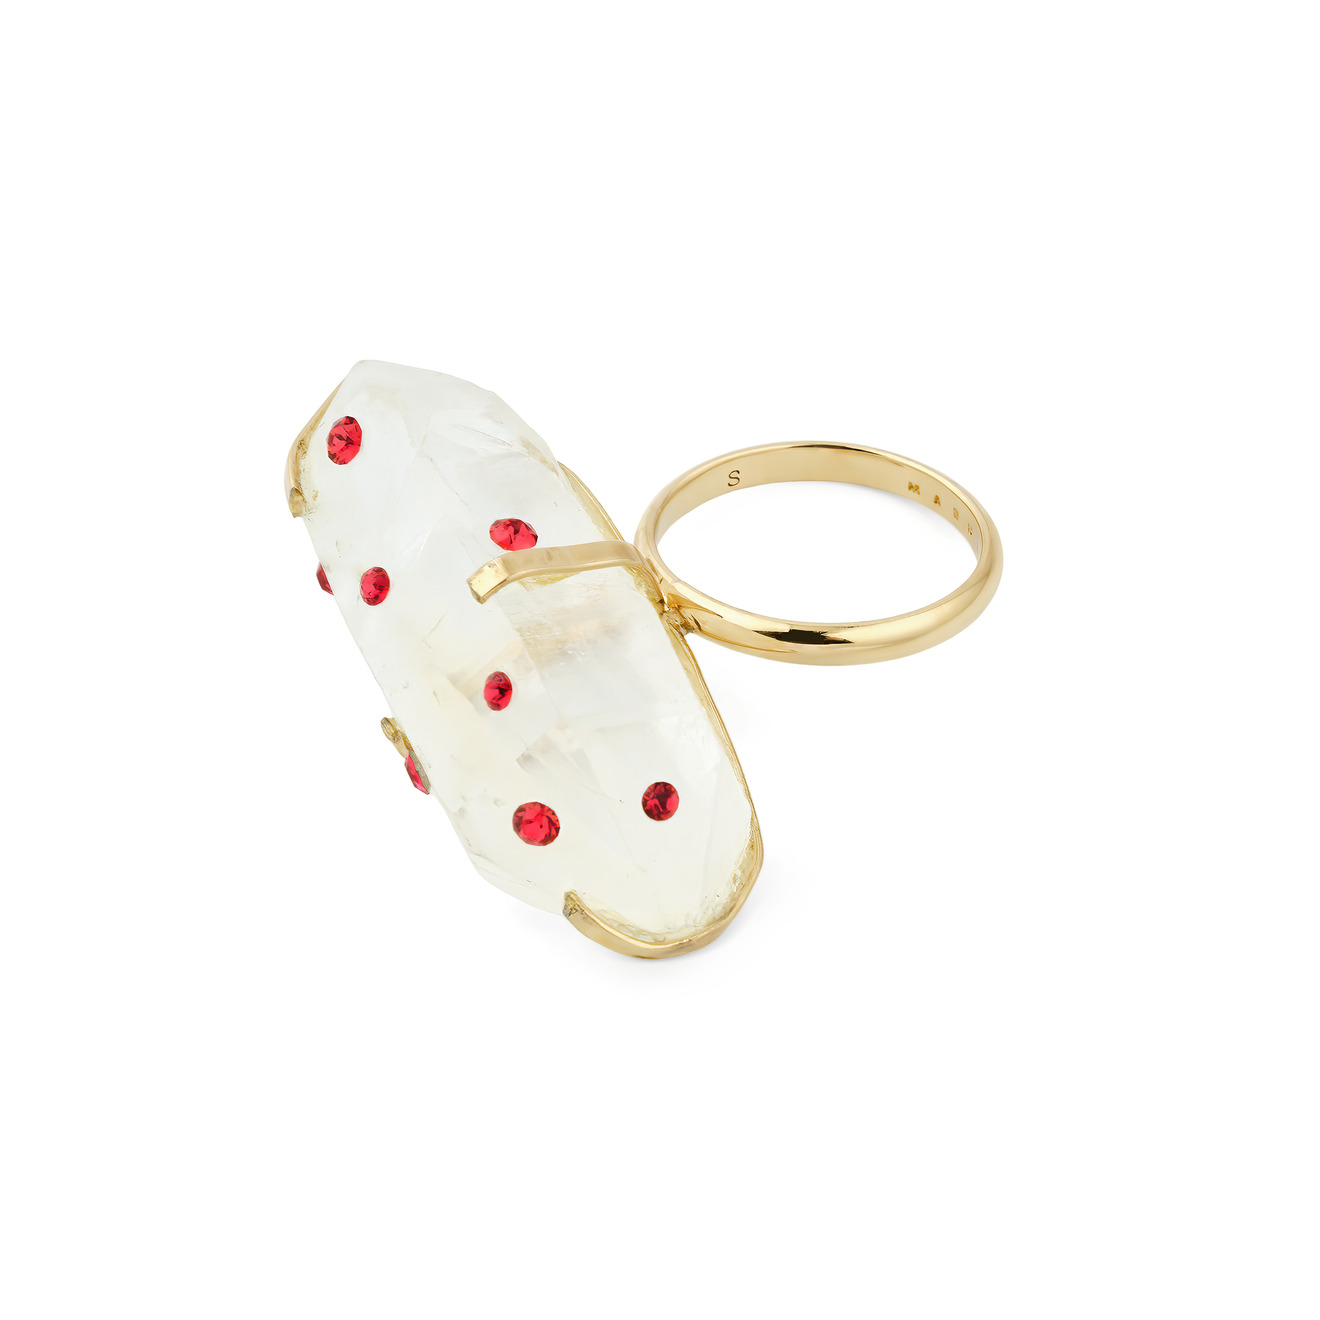 Marni Золотистое кольцо с крупным белым кристаллом с красными вкраплениями marni позолоченная цепь с зелено белым кулоном цветком